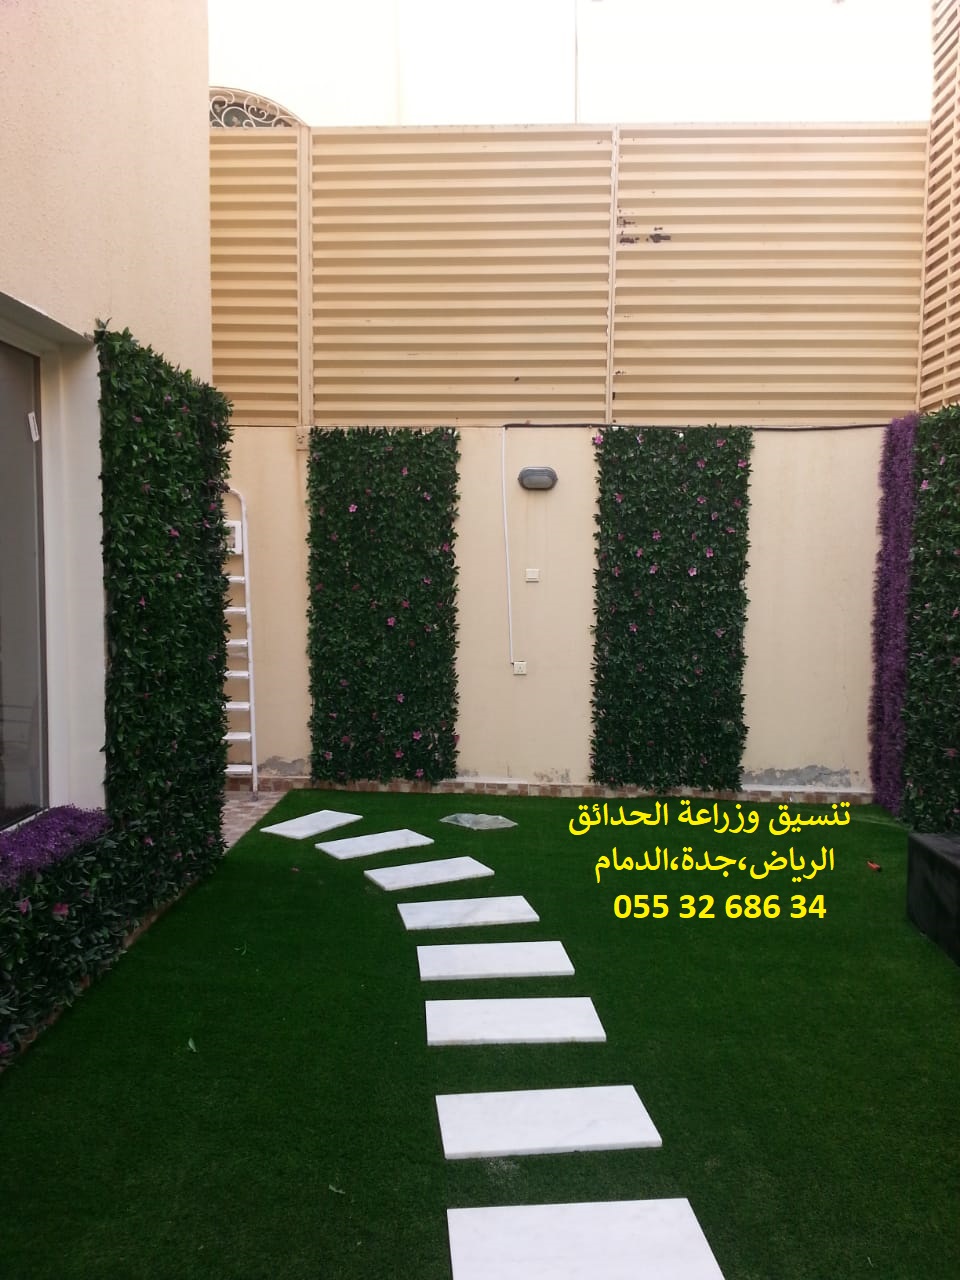 ارخص شركة تنسيق حدائق عشب صناعي عشب جداري الرياض جدة الدمام 0553268634 P_1143iyeso6